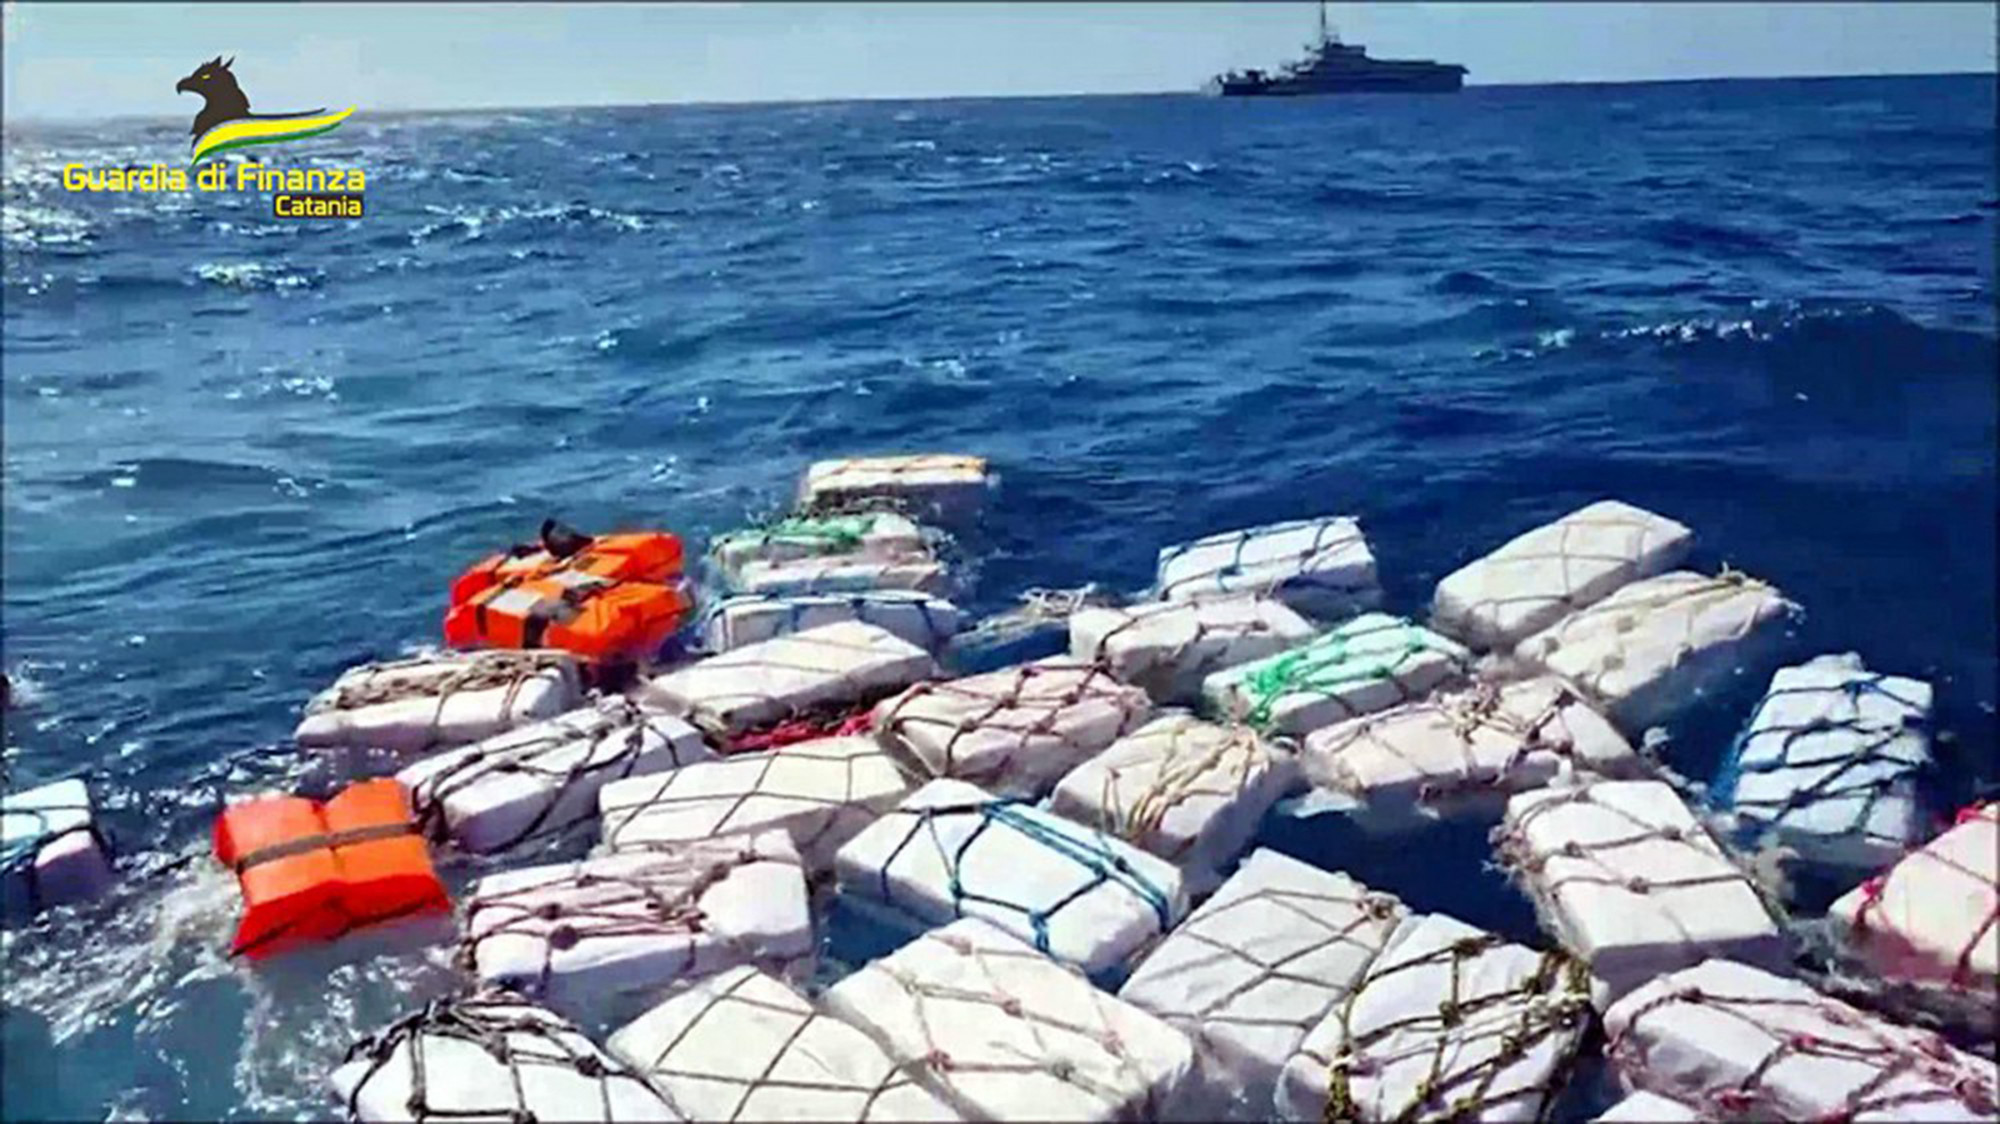 Két tonna kokaint talált az olasz rendőrség a Földközi-tengeren